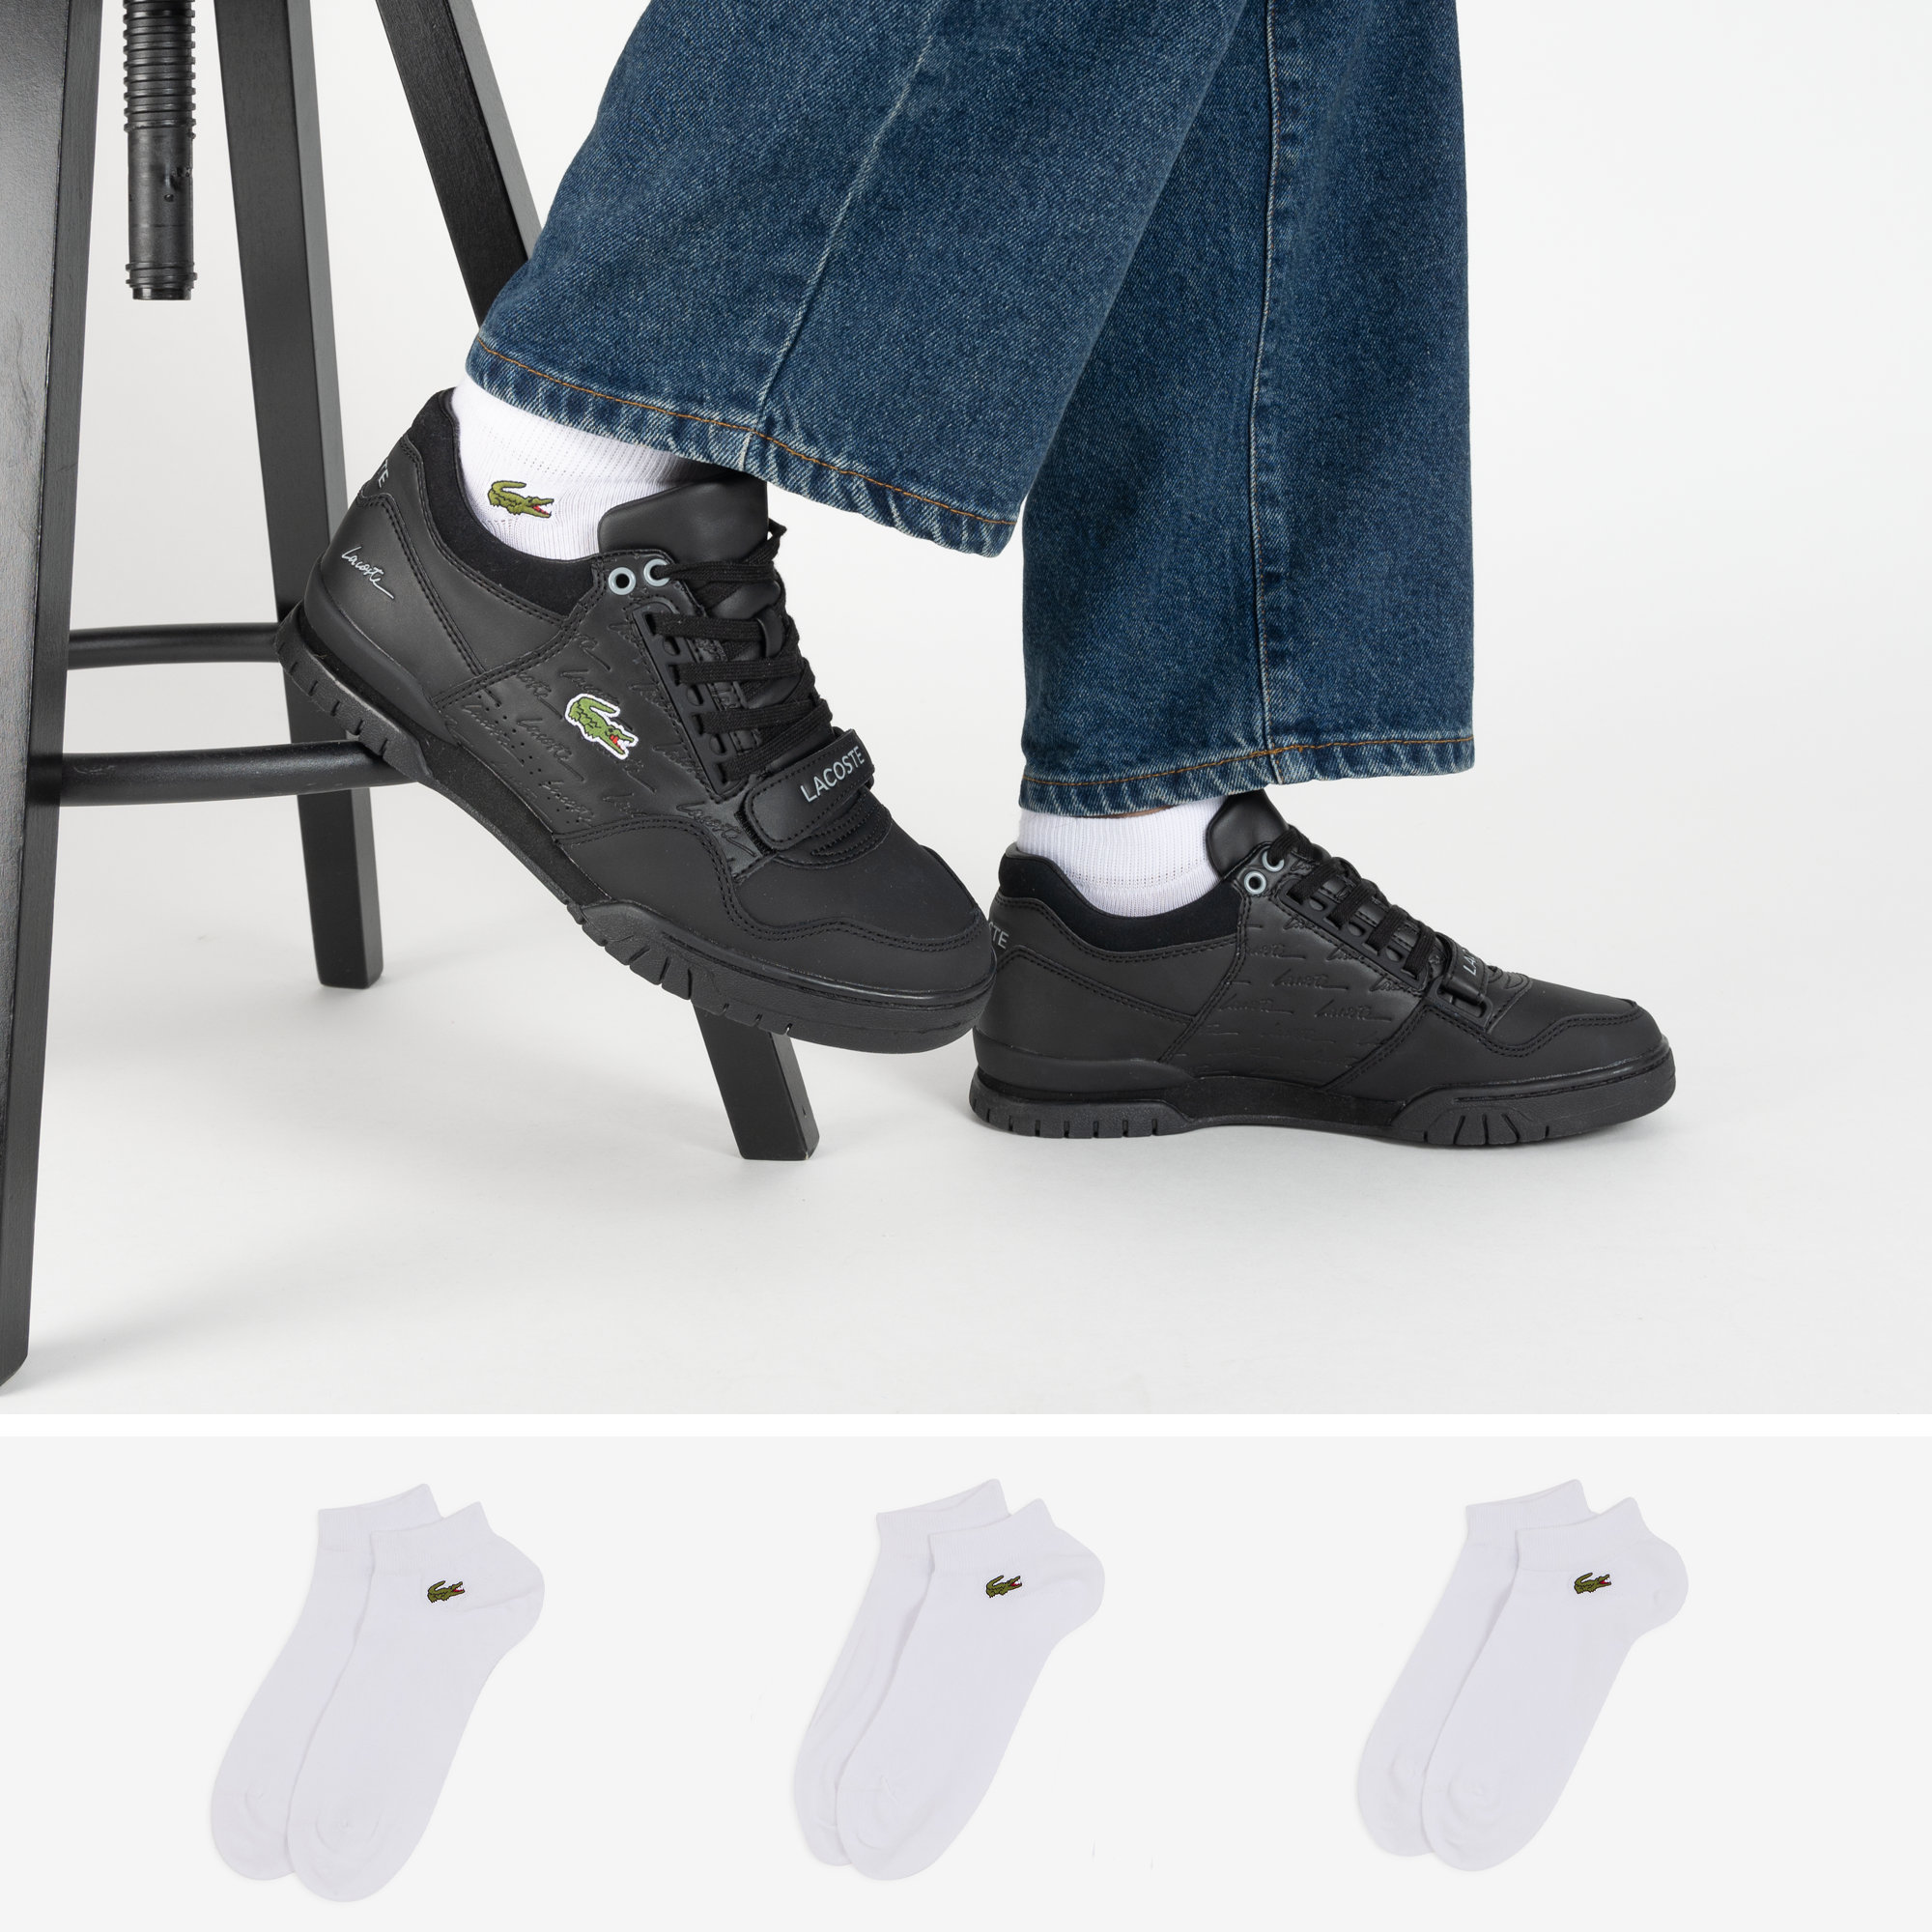 Chaussettes de tennis Lacoste homme - Coloris noir - Pack de 3 paires